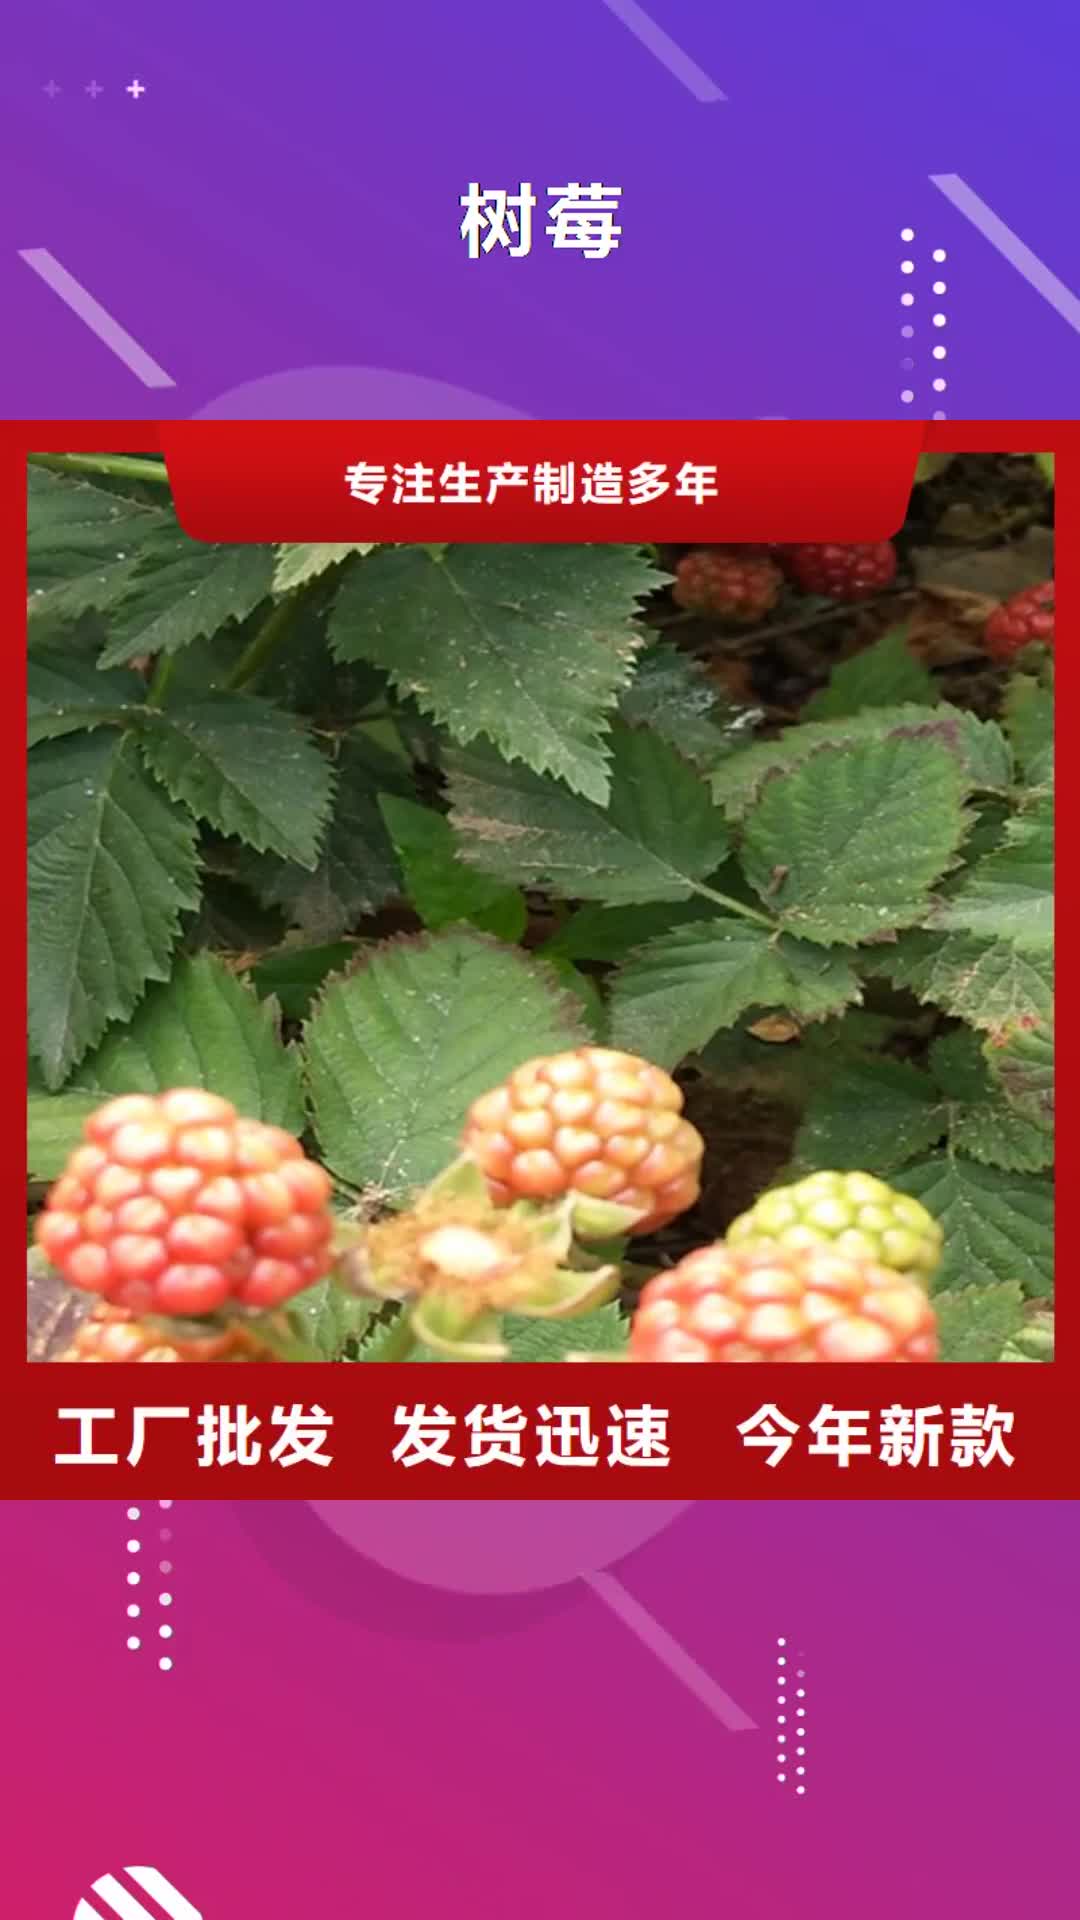 【杭州 树莓_苹果苗诚信厂家】